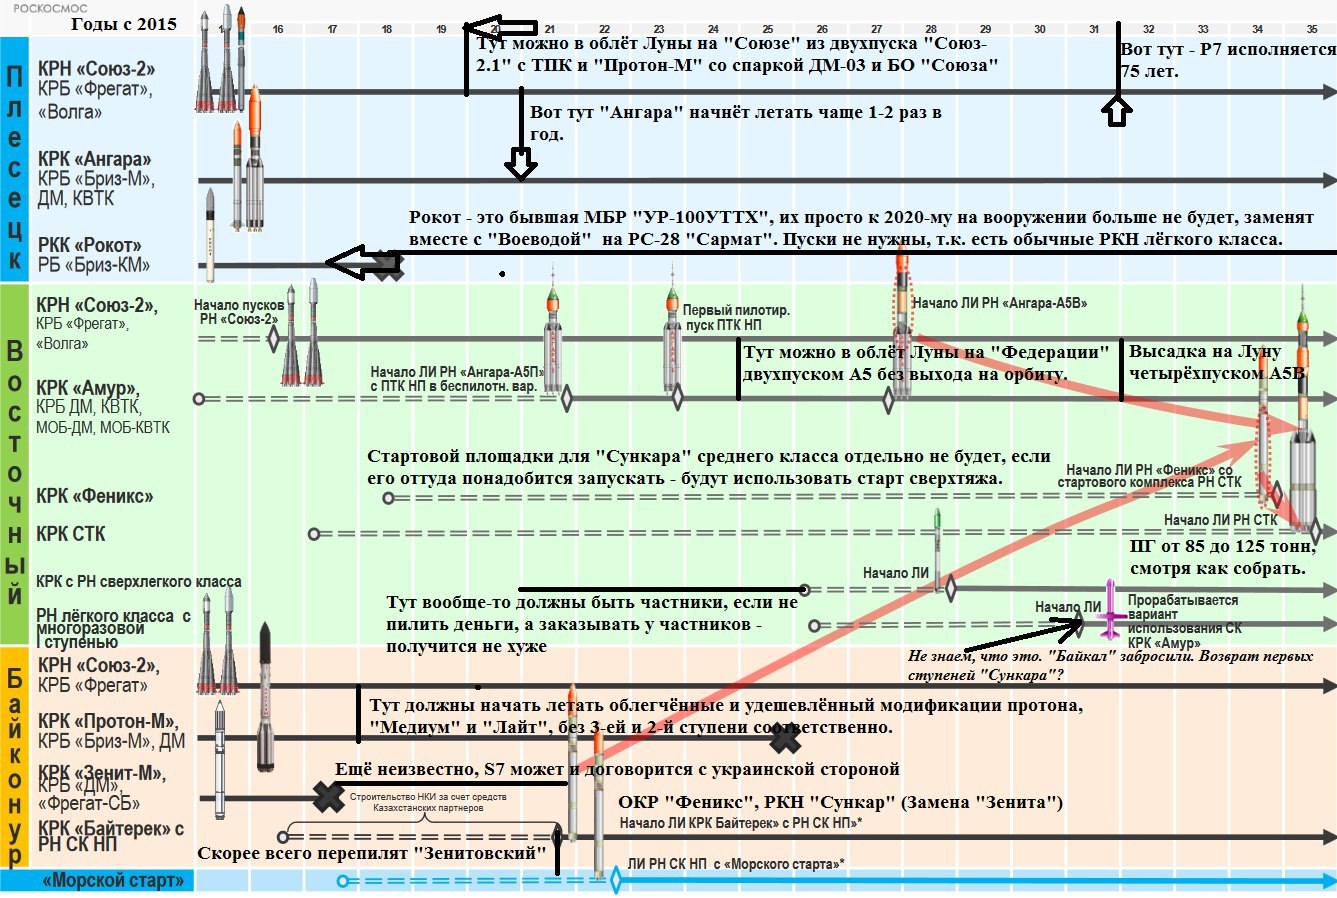 Проекты Роскосмоса до 2035 года